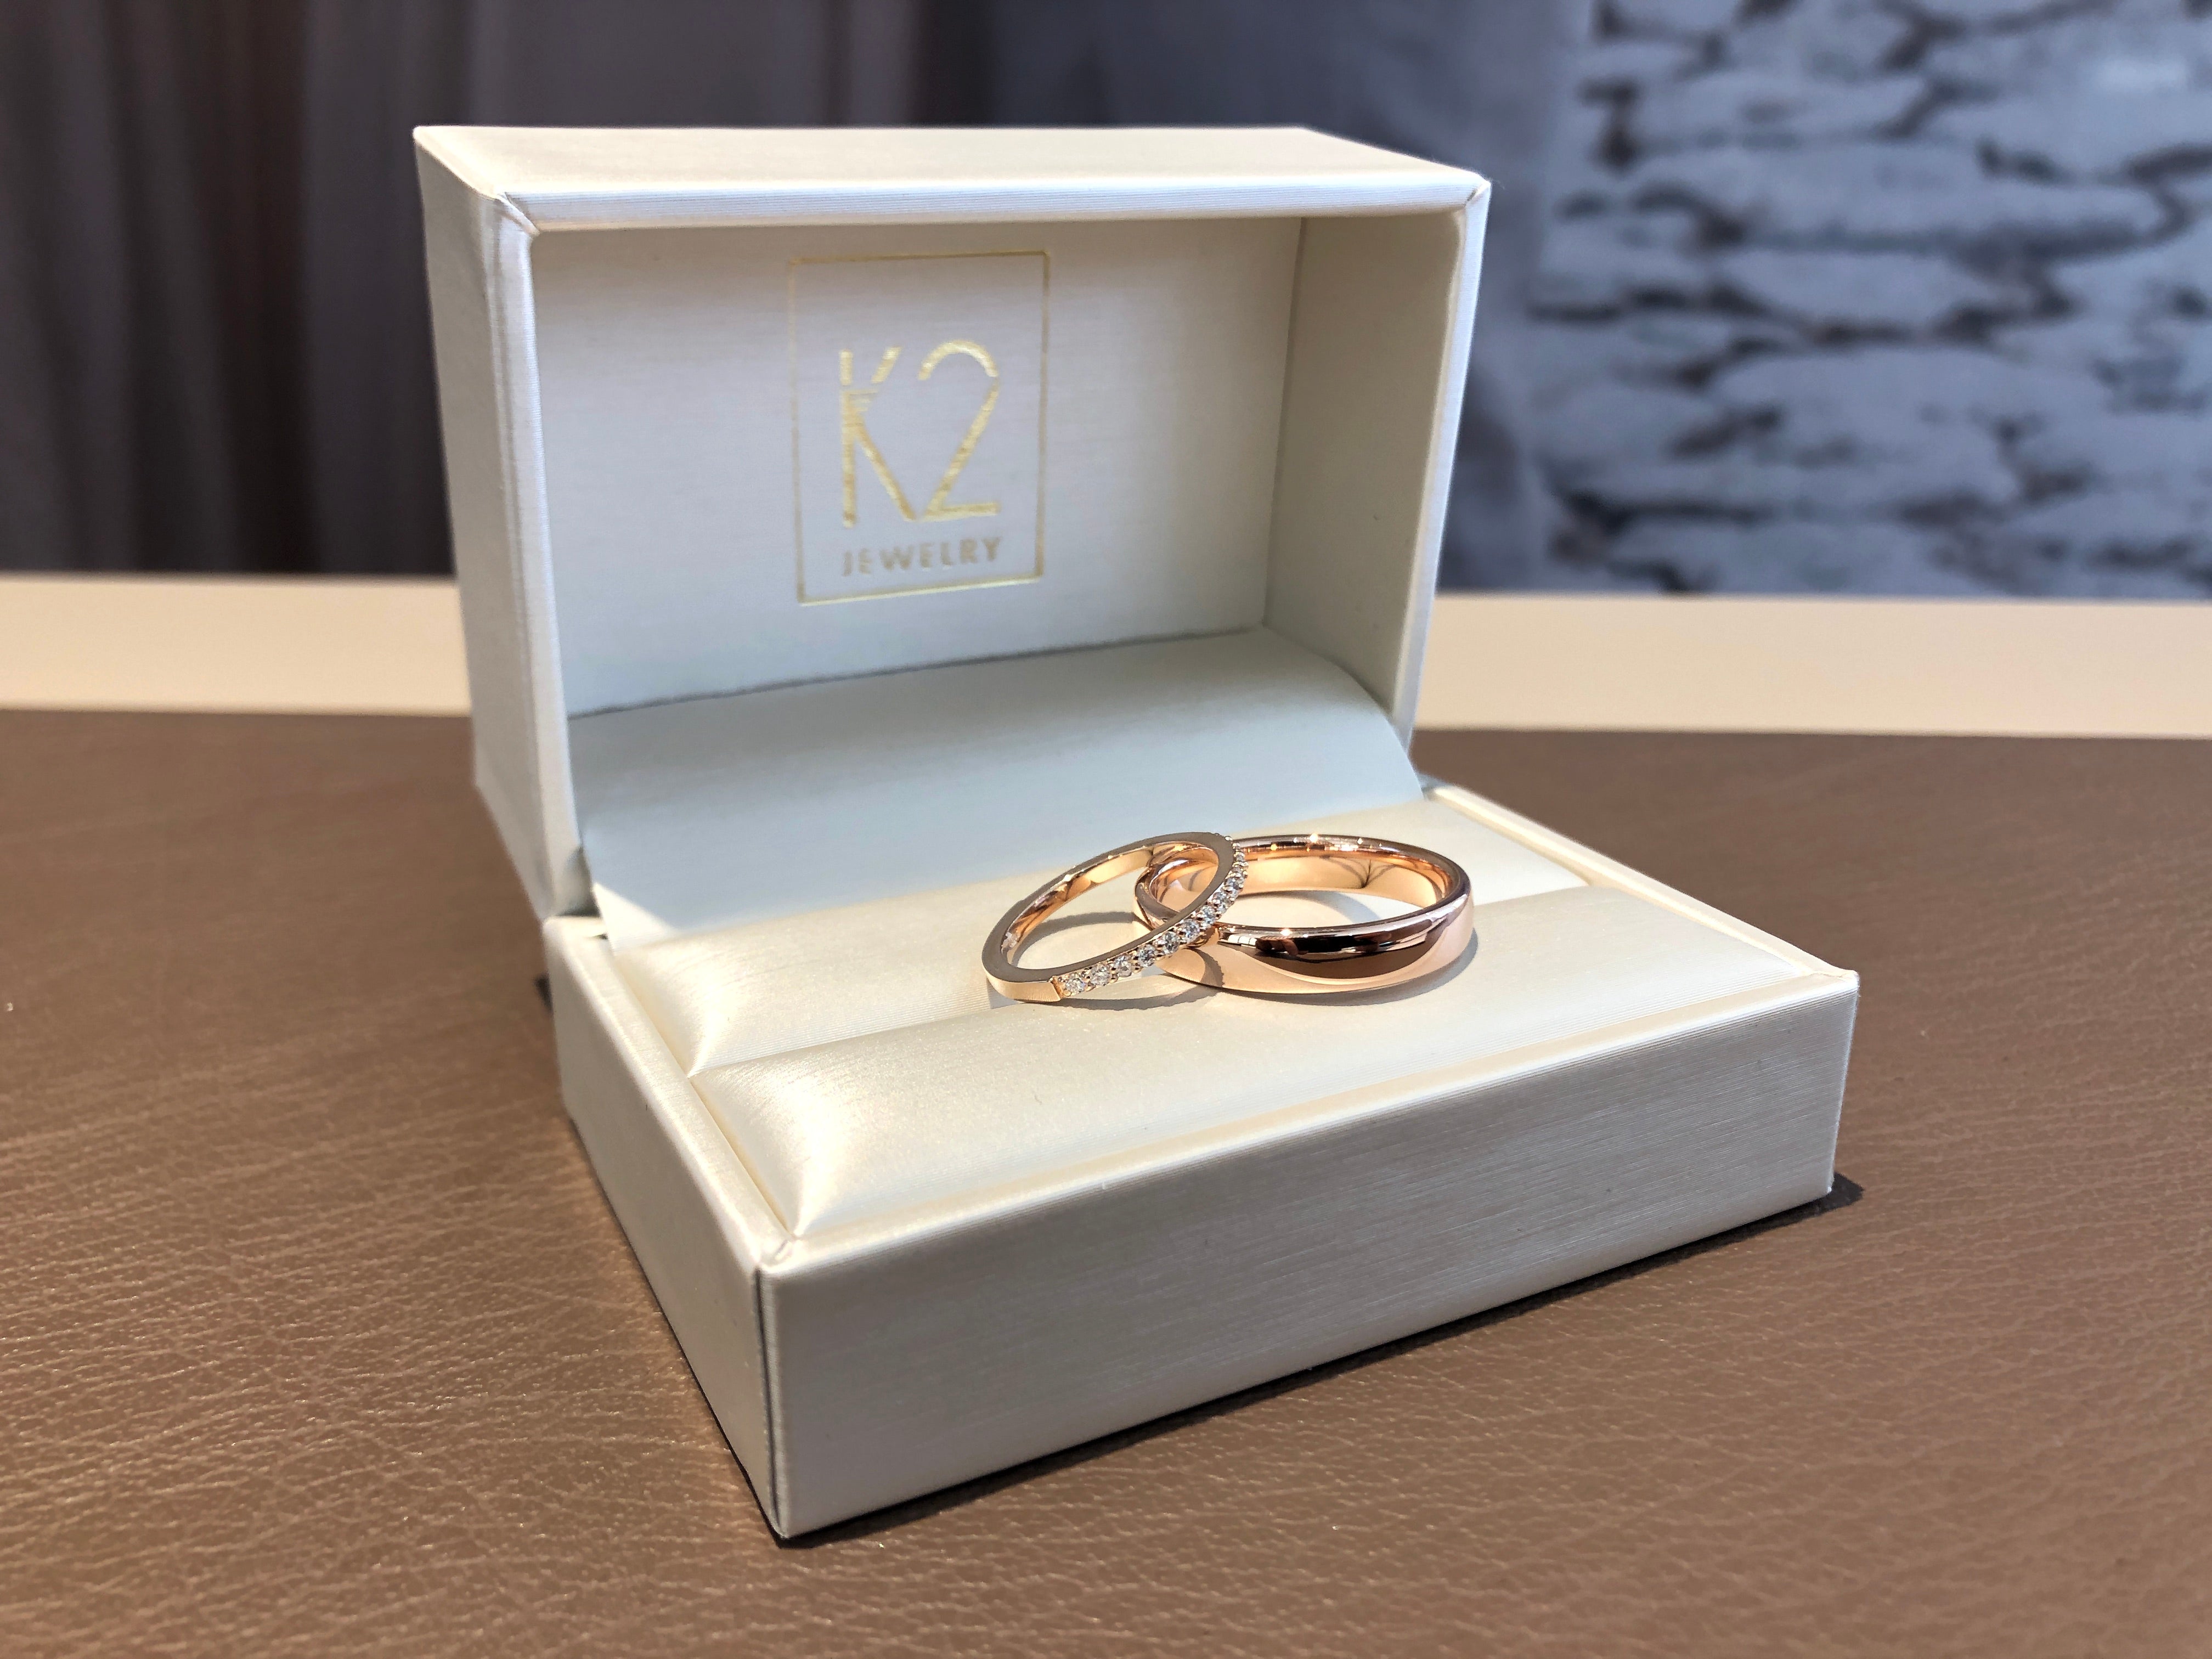 Roségoldene Eheringe in Bielefeld mit Diamanten in einer K2 Jewelry Schatulle.